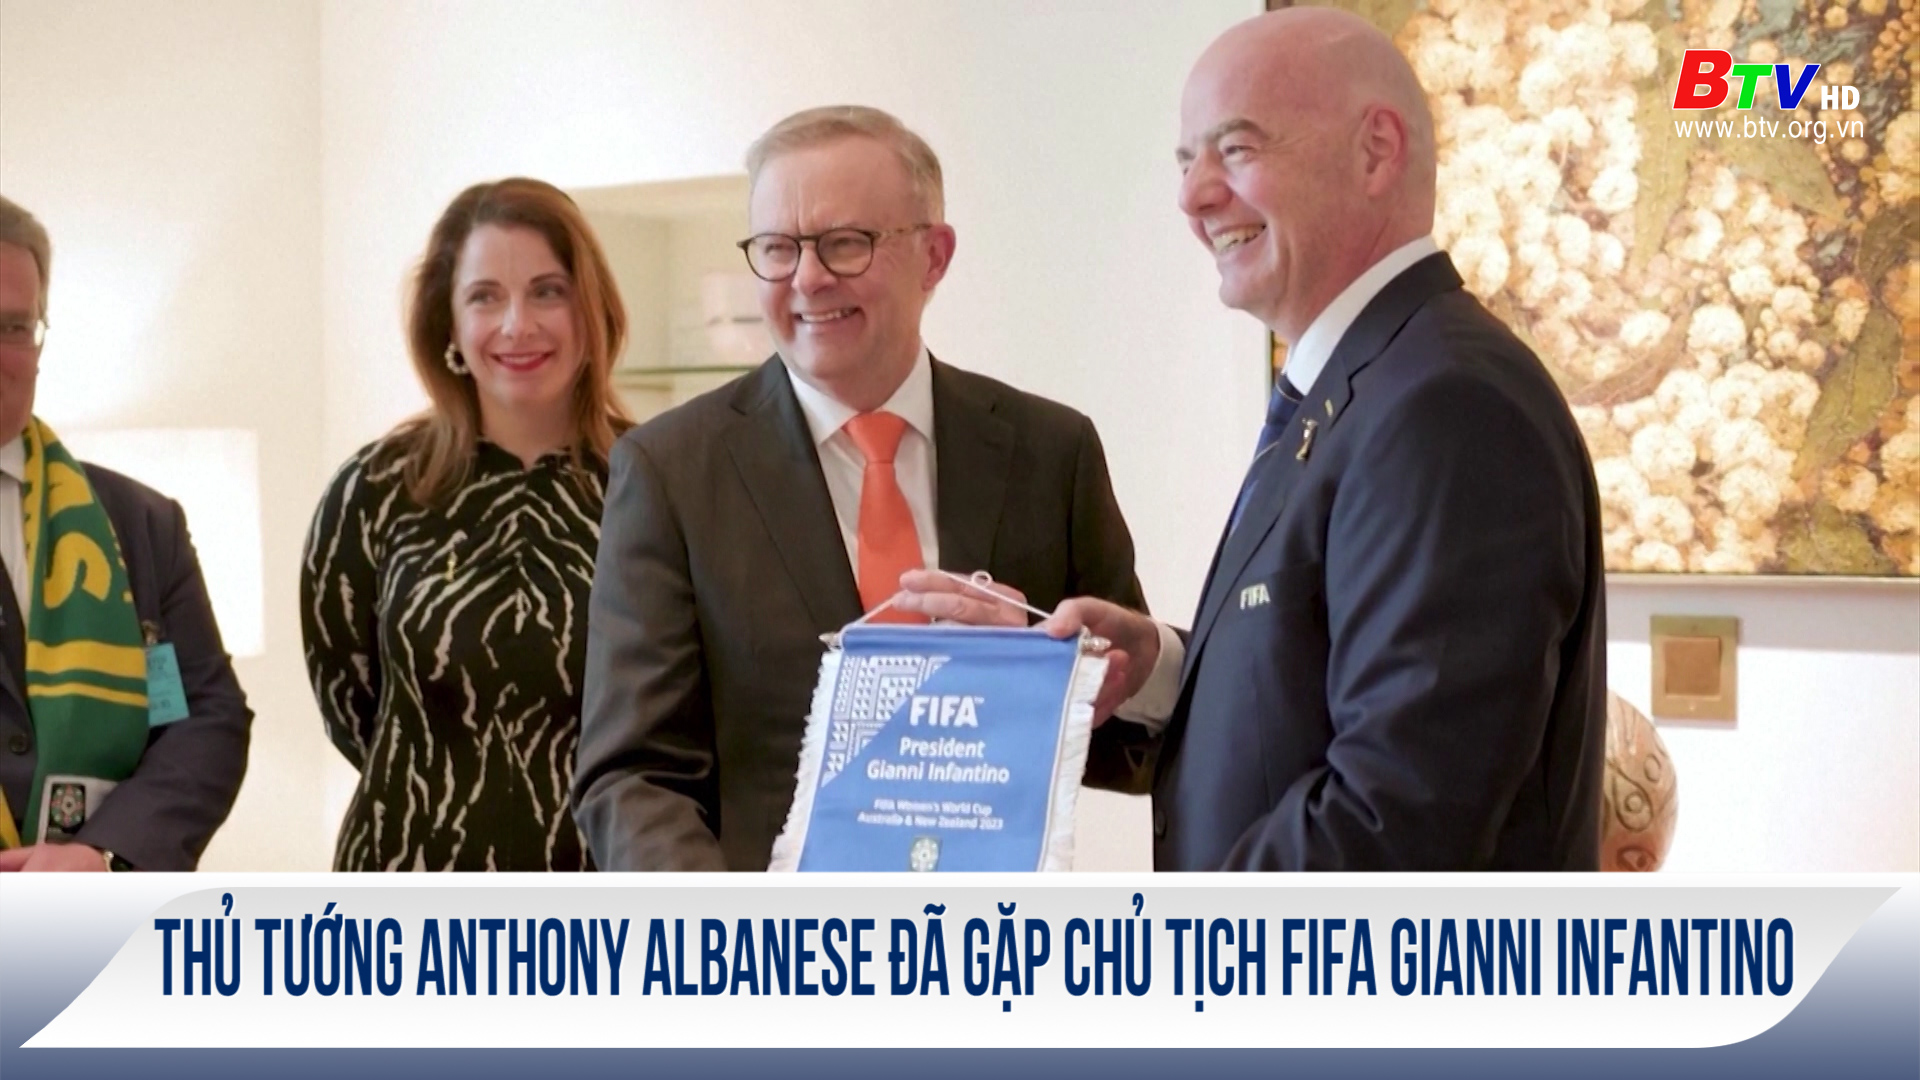 Thủ tướng Anthony Albanese đã gặp Chủ tịch FIFA Gianni Infantino